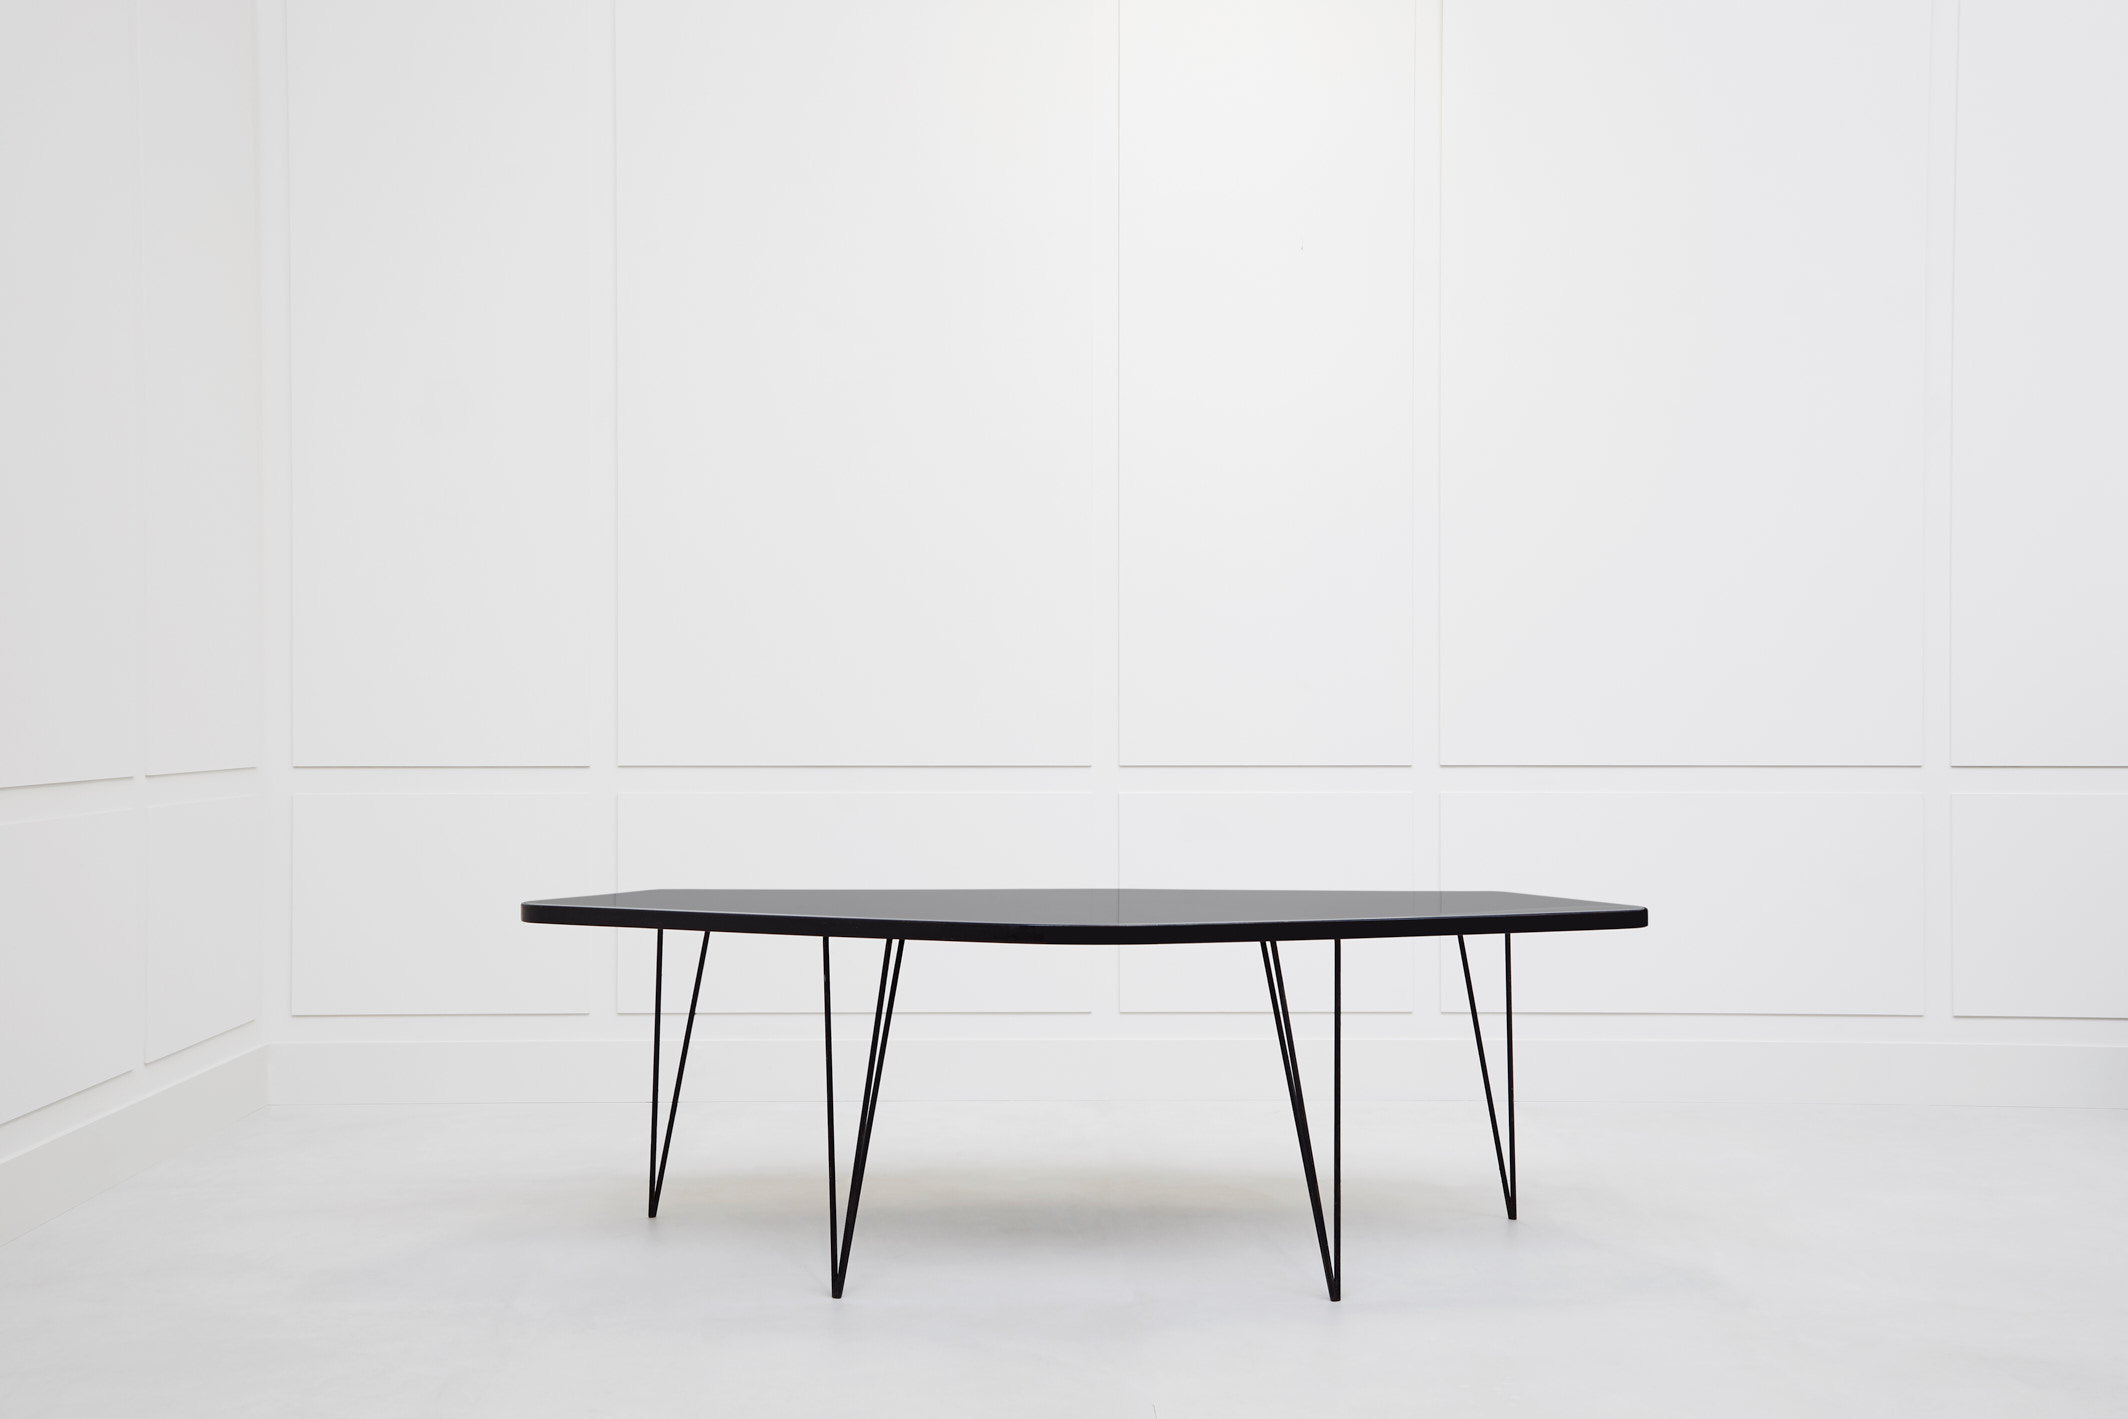 Joaquim Tenreiro, ‘Abstrata’ table, vue 01